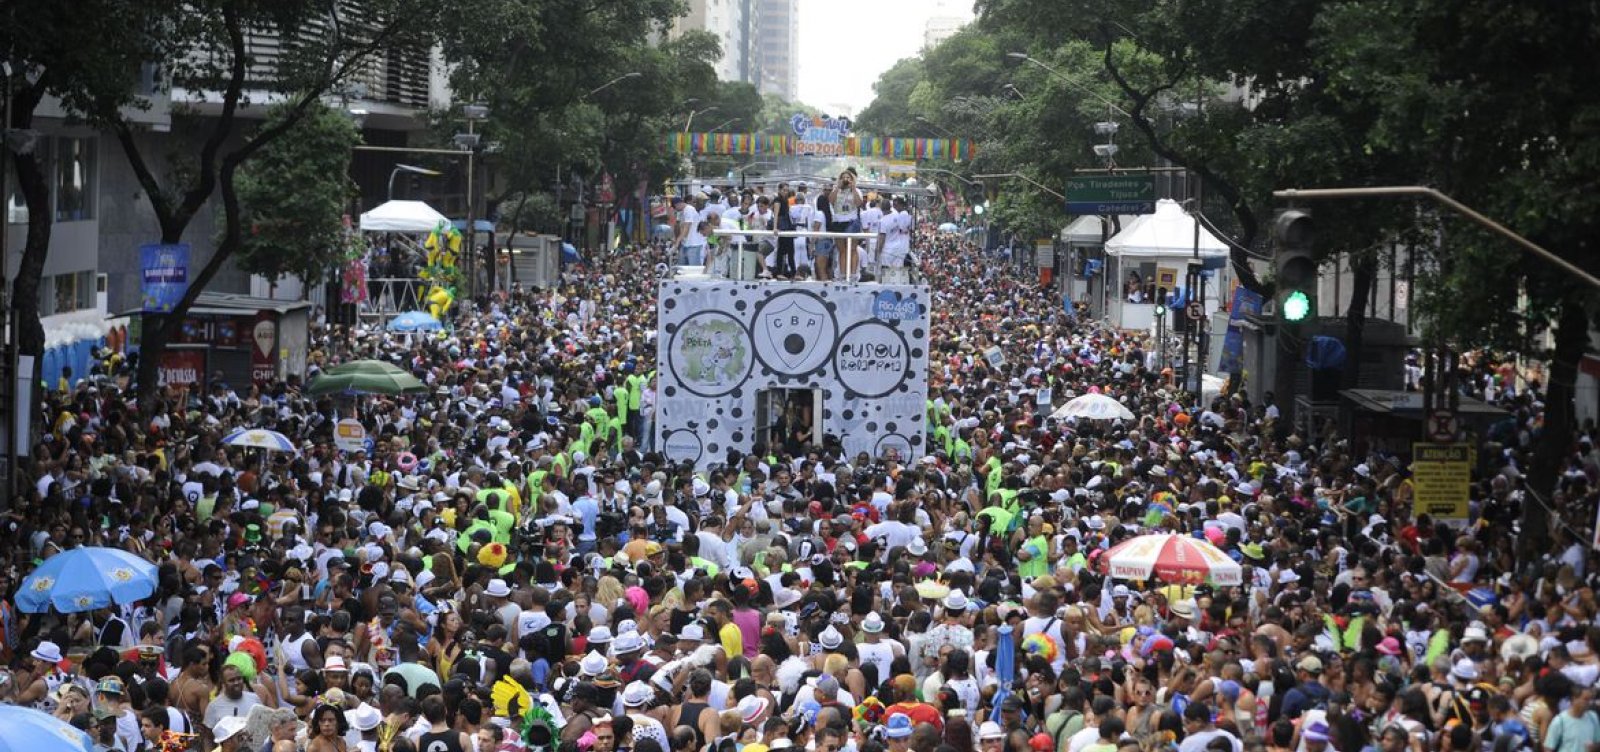 Carnaval de rua no Rio de Janeiro é cancelado; desfiles na Sapucaí estão mantidos